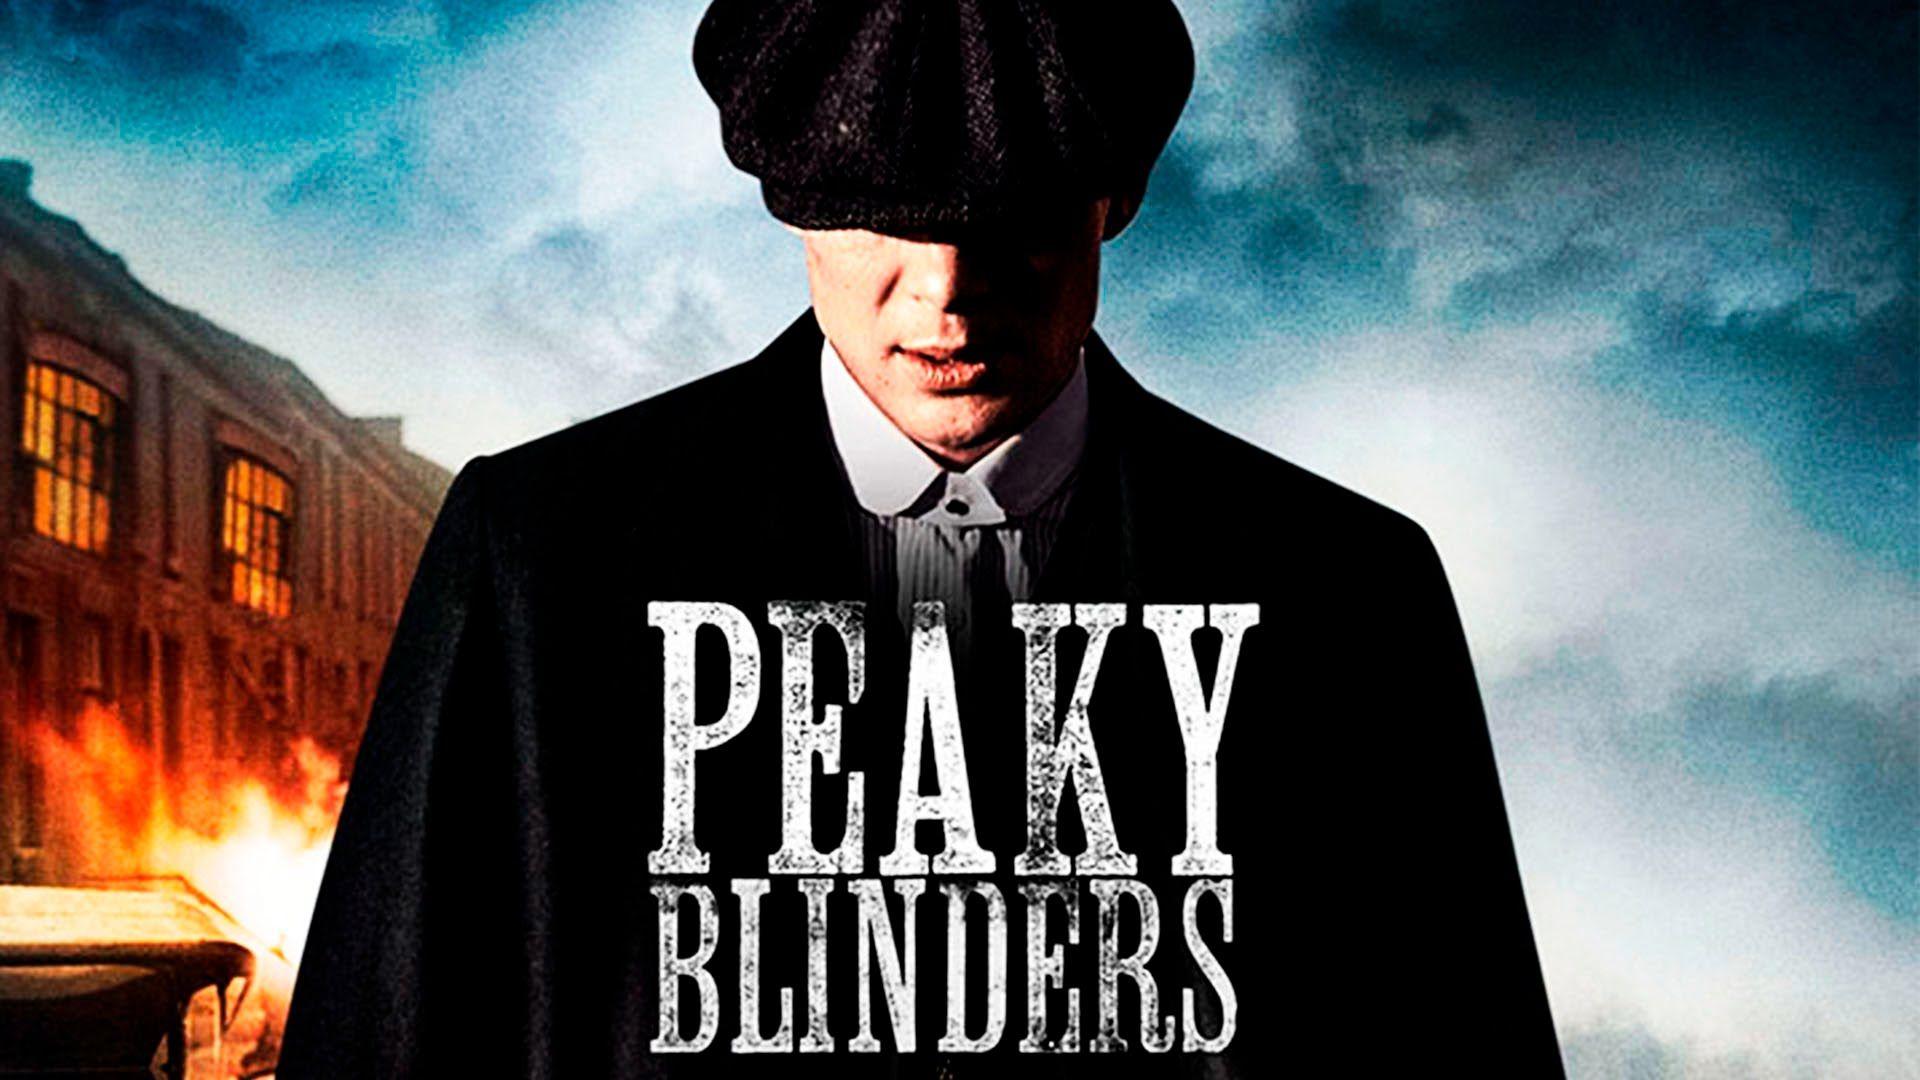 Peaky Blinders HD Wallpapers - Wallpaper Cave